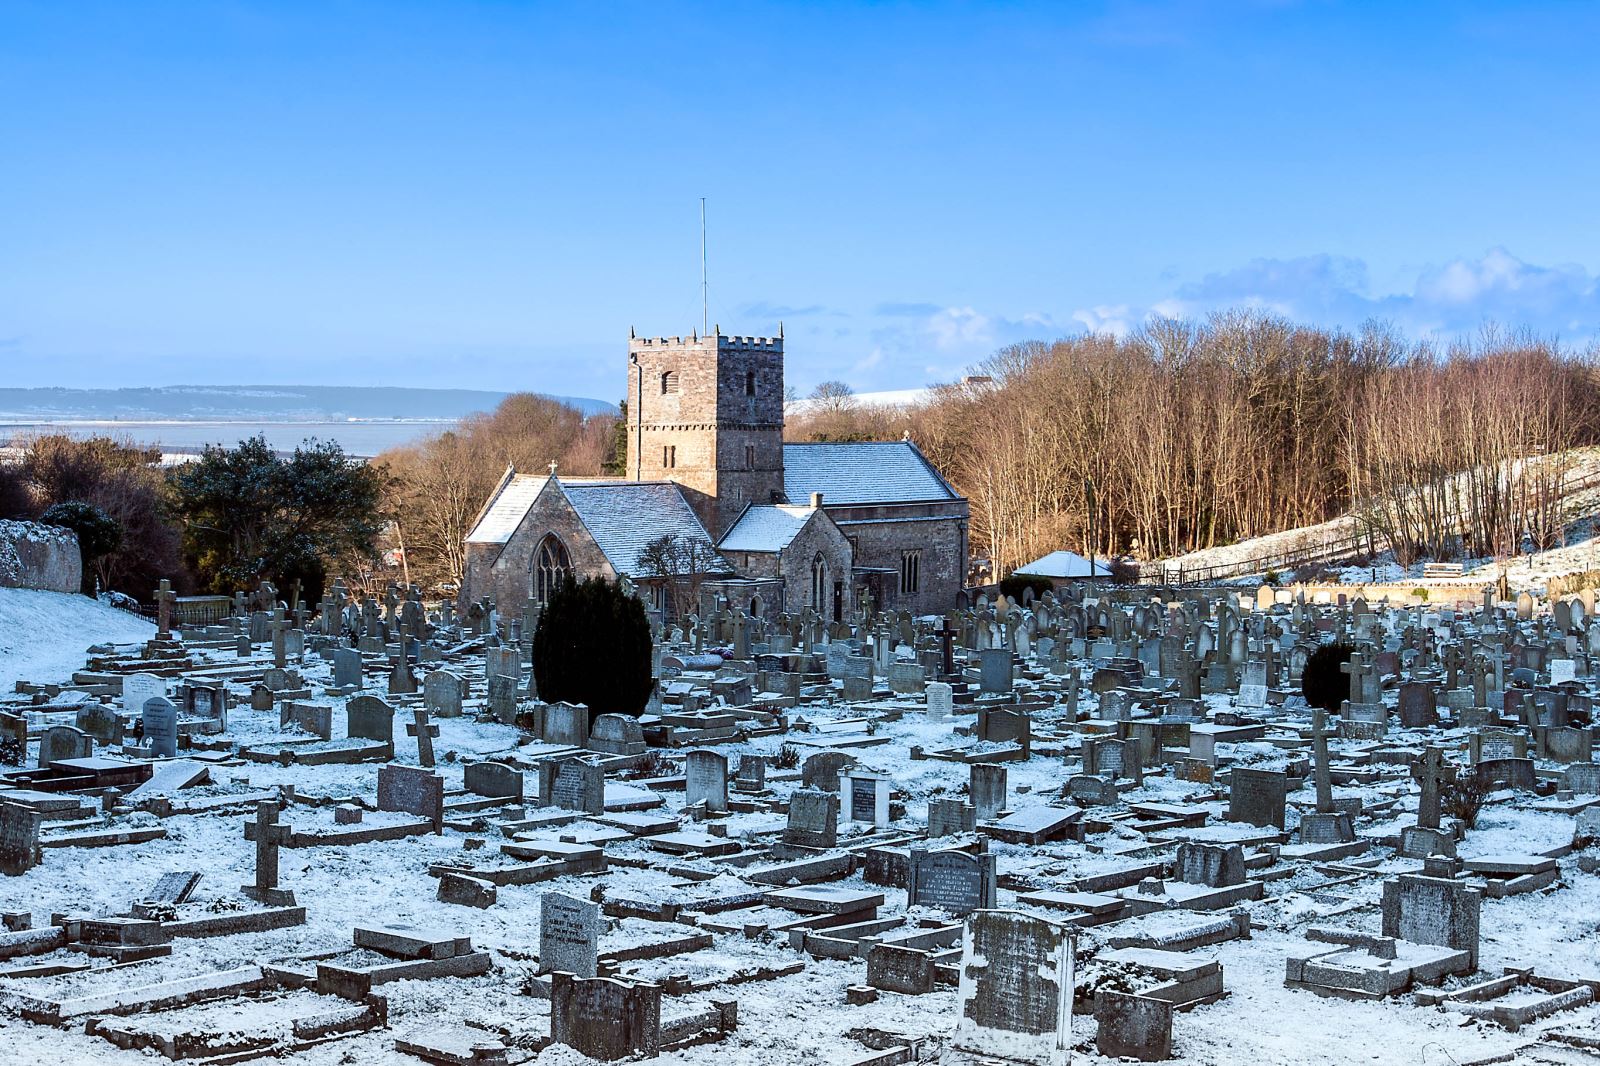 A snowy churchyard